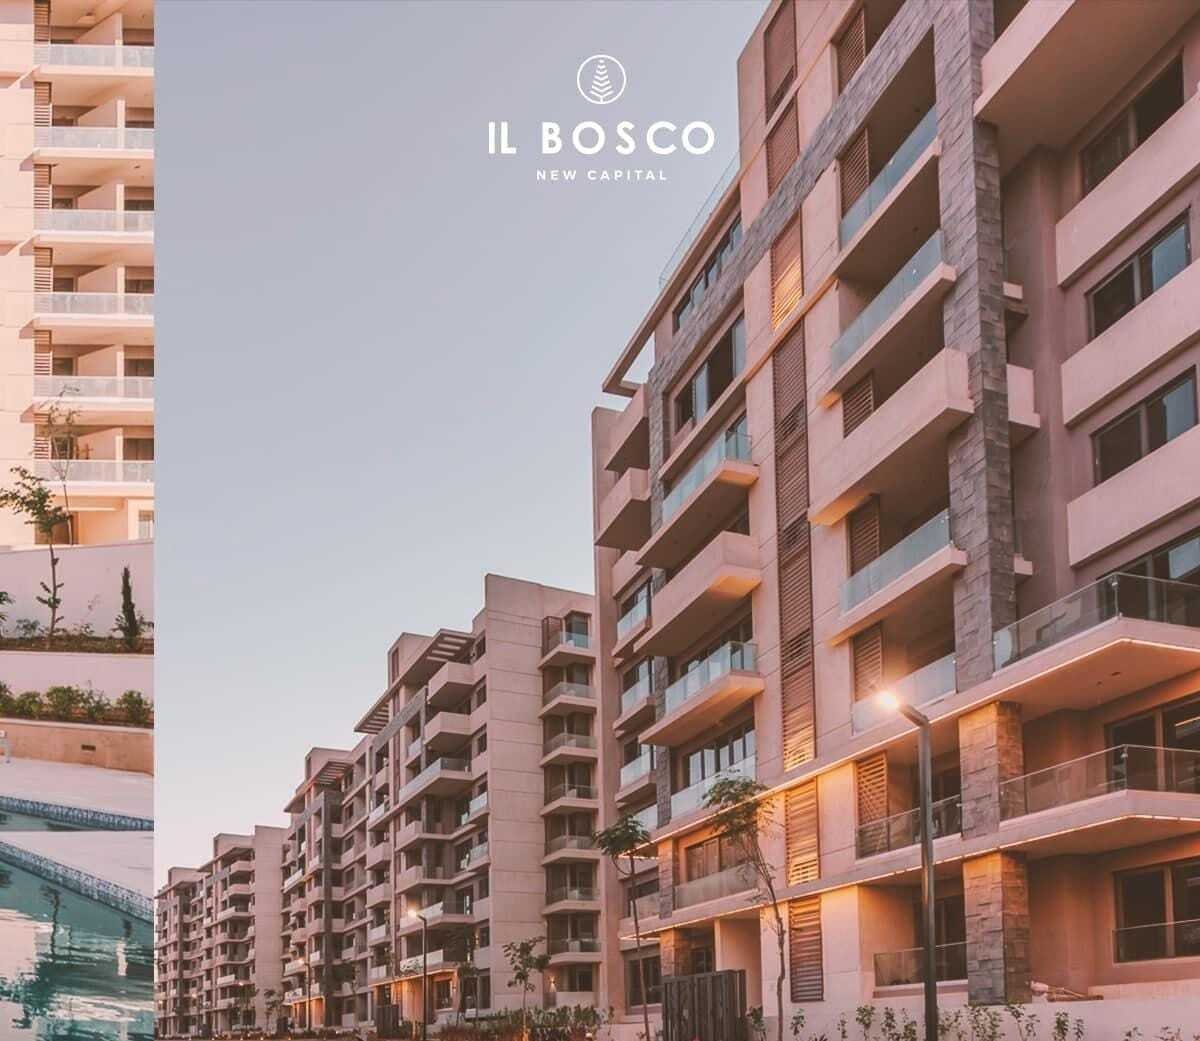 شقة للبيع بالعاصمة الإدارية الجديدة مساحة144متر في كمبوند IL BOSCO | THE PEAK PROPERTIES